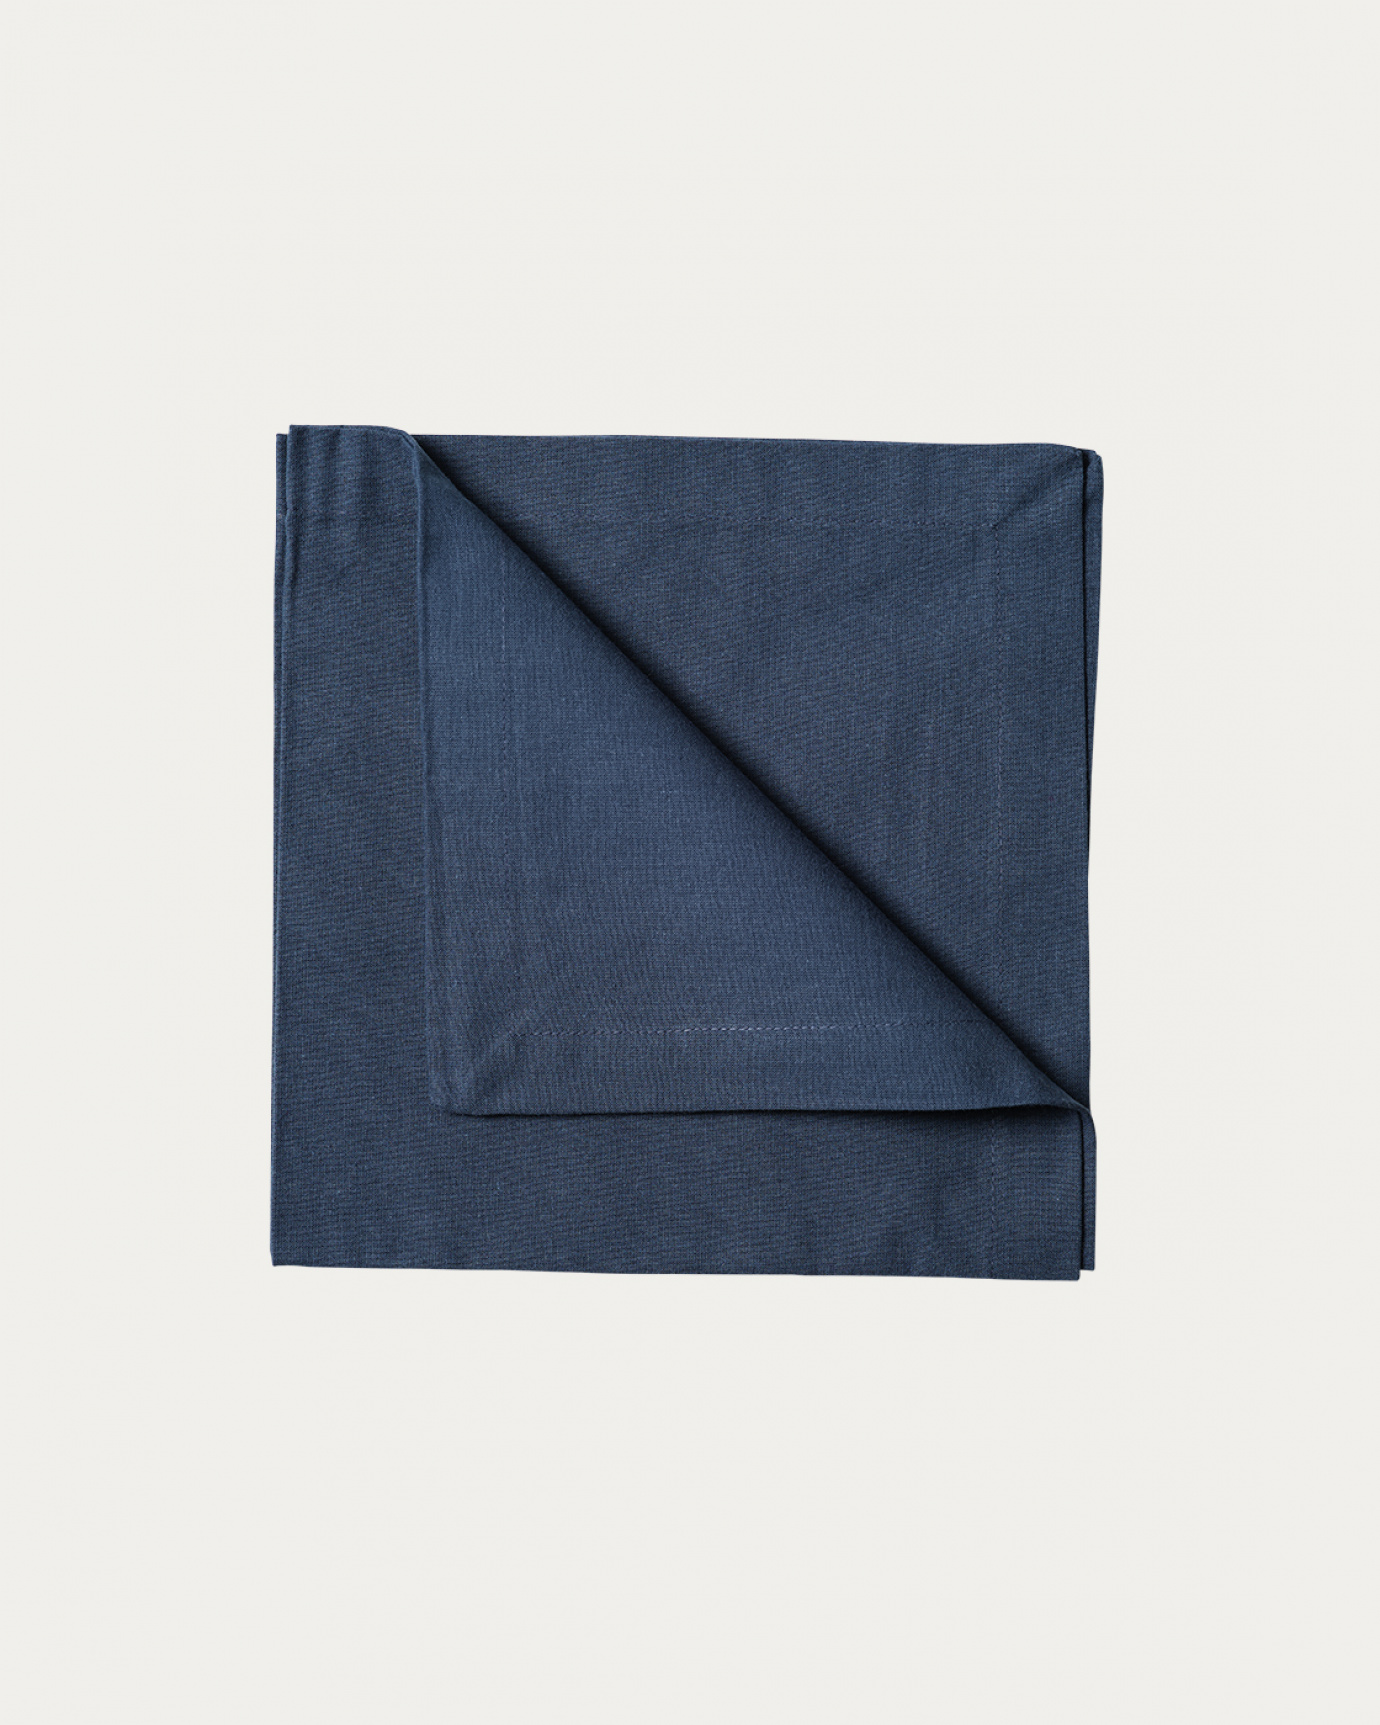 Image du produit serviette de table ROBERT bleu nuit en coton doux de LINUM DESIGN. Taille 45 x 45 cm et vendu en lot de 4.